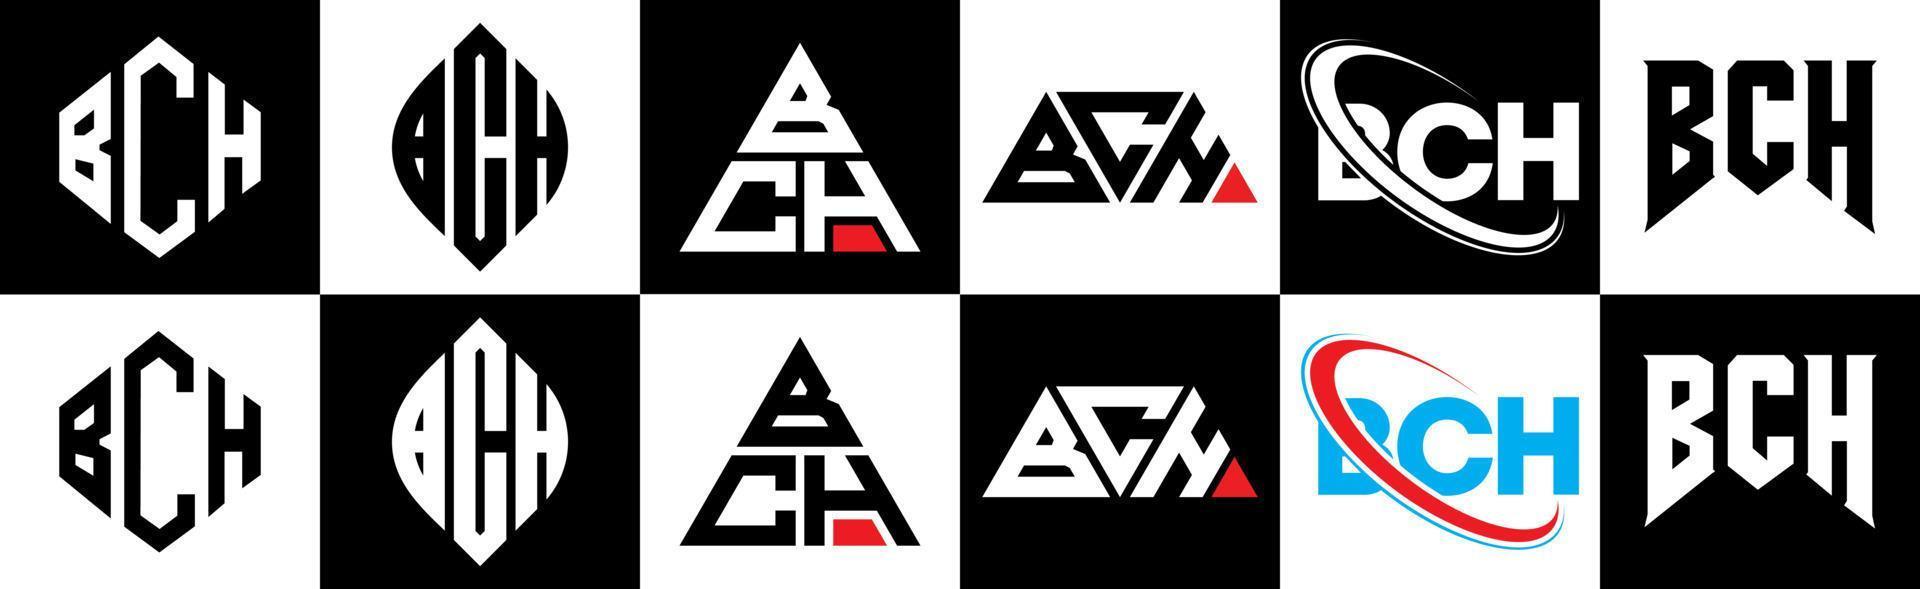 bch-Buchstaben-Logo-Design in sechs Stilen. bch polygon, kreis, dreieck, sechseck, flacher und einfacher stil mit schwarz-weißem buchstabenlogo in einer zeichenfläche. bch minimalistisches und klassisches Logo vektor